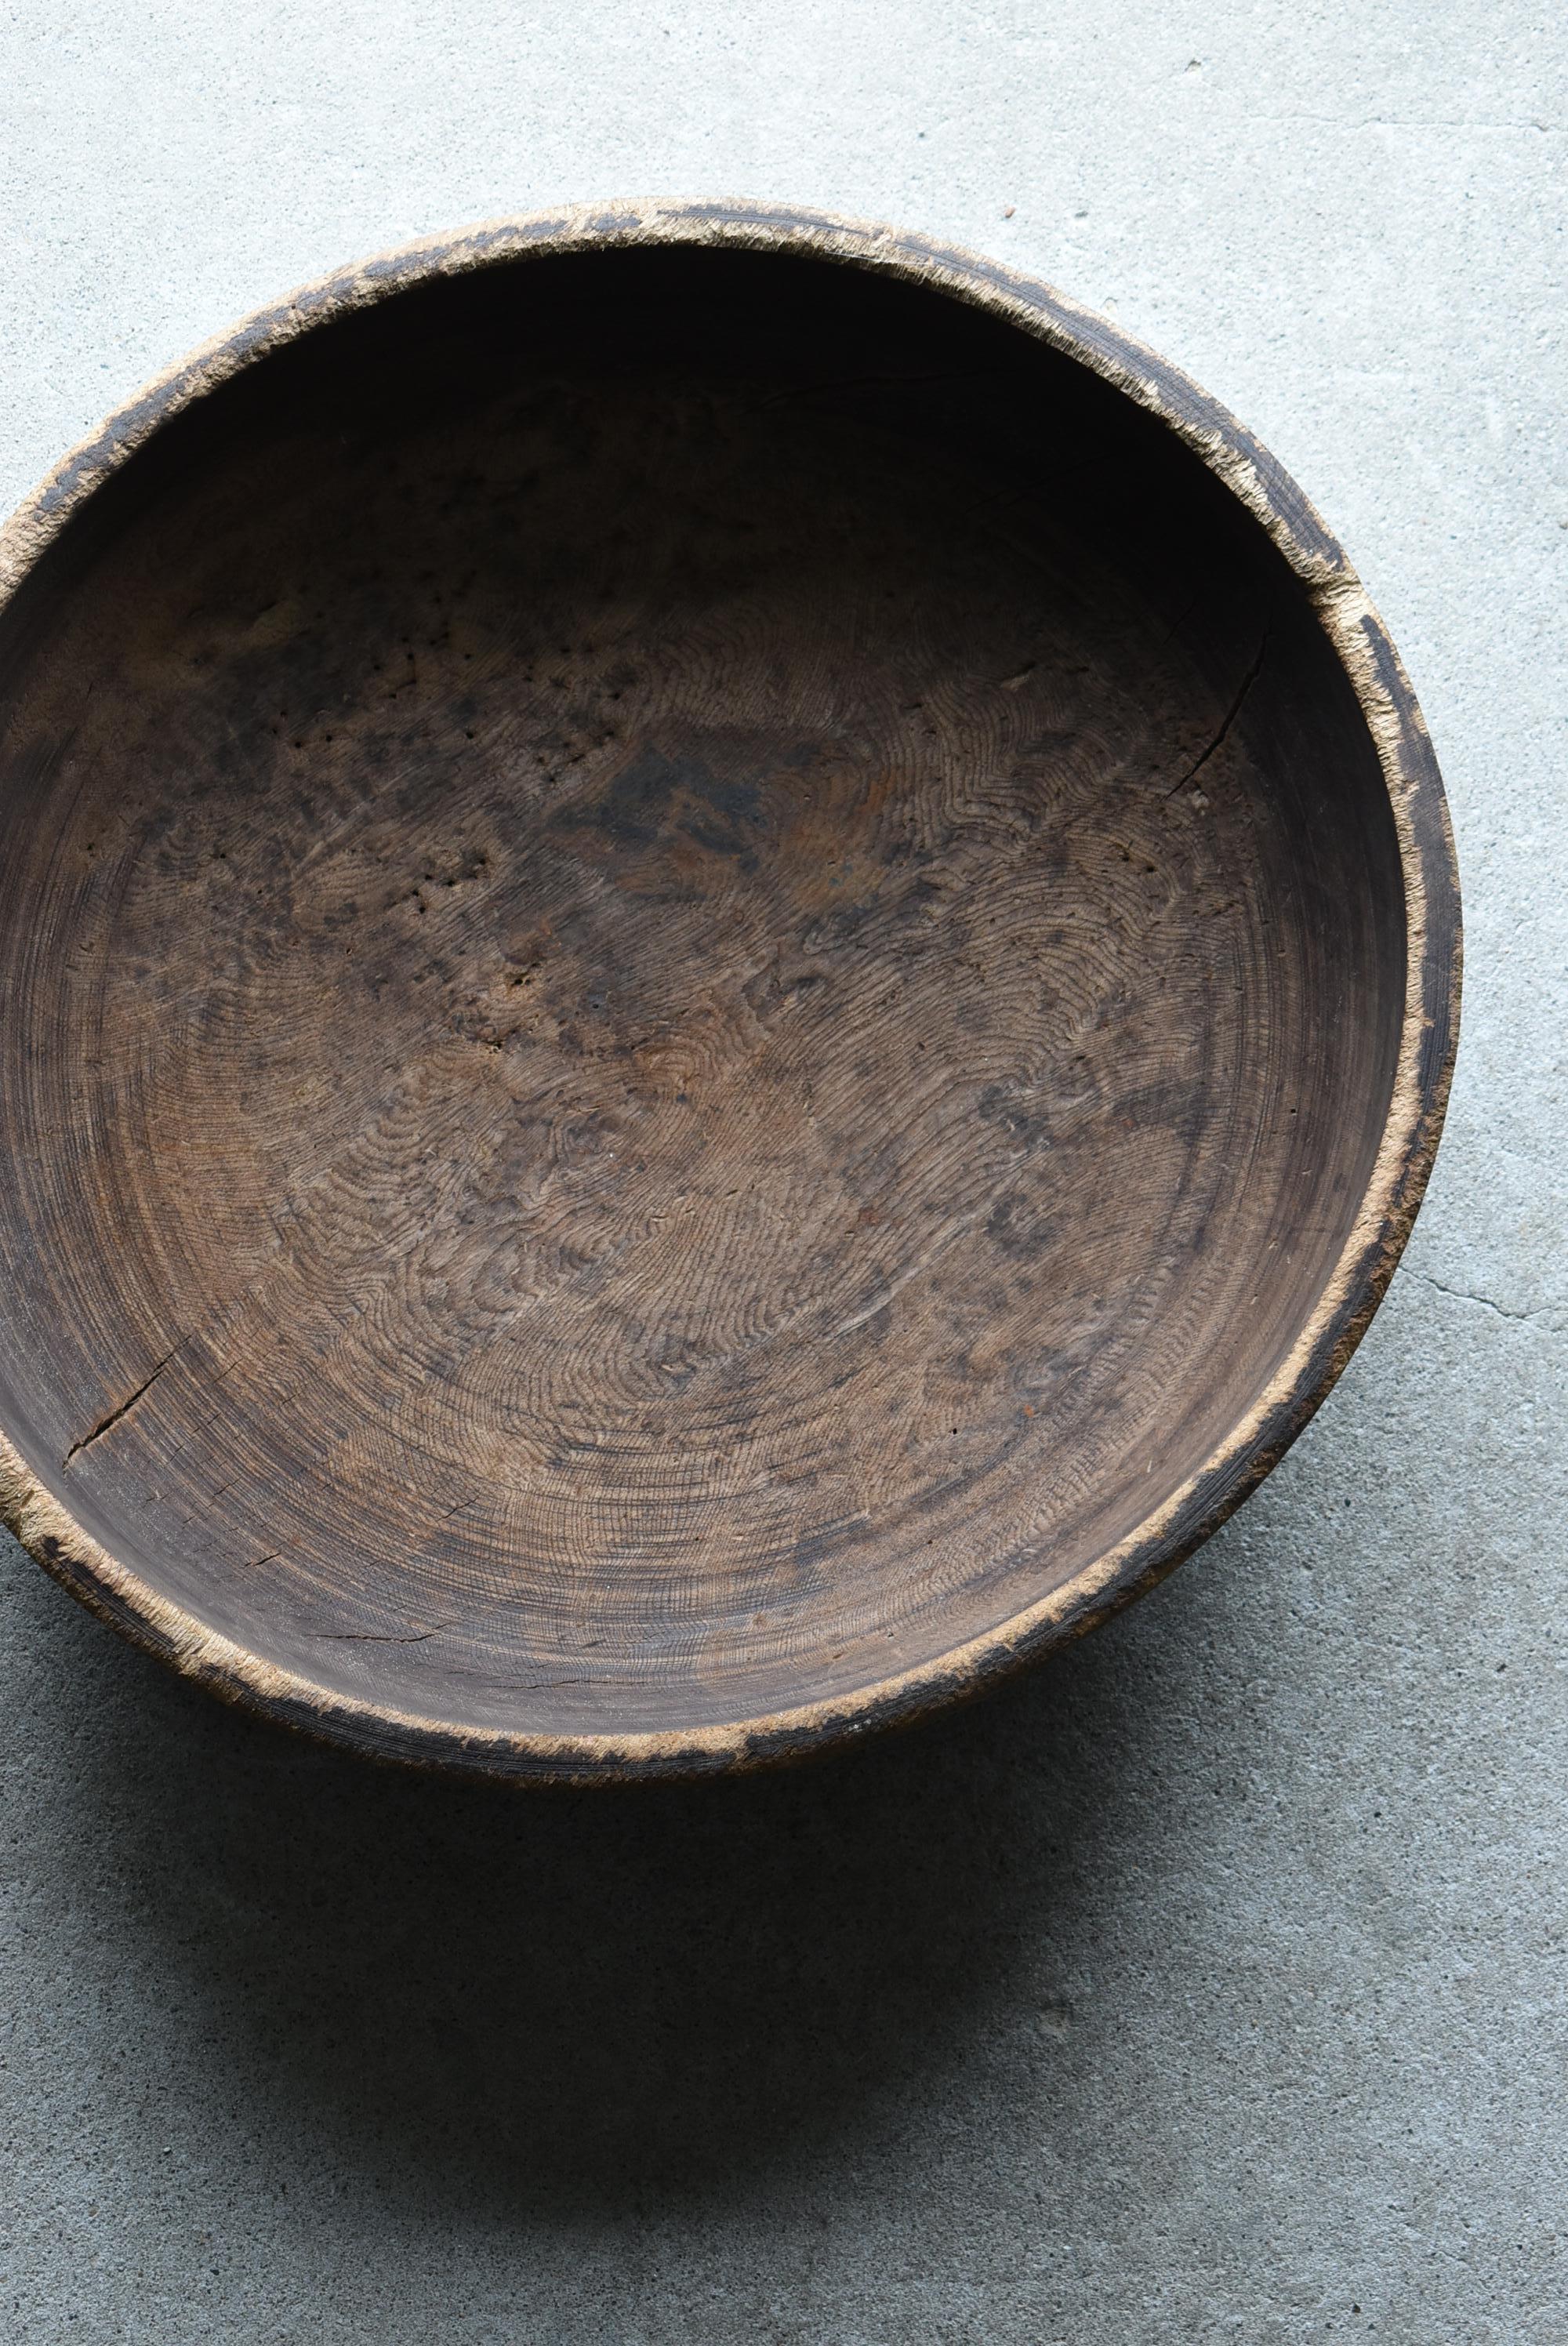 Japanese Antique Large Wooden Bowl 1860s-1900s/Mingei Wabisabi Primitive 4